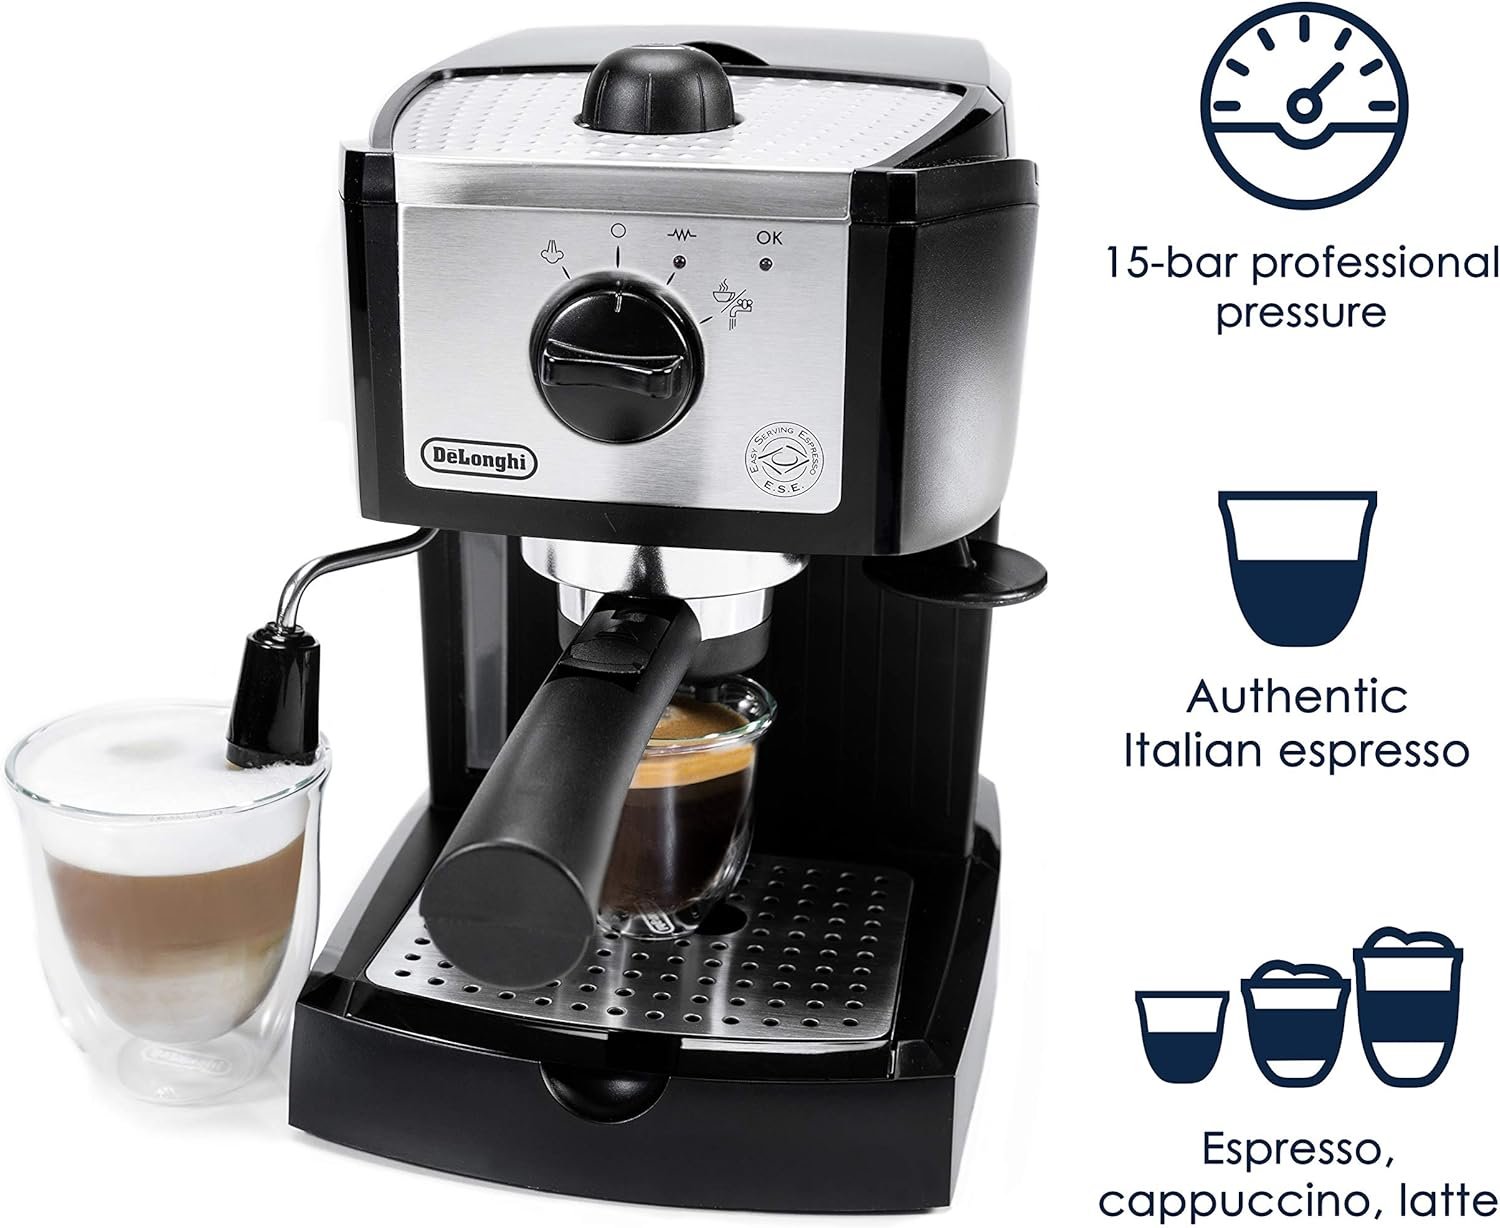 DeLonghi EC155 Espresso Machine Review